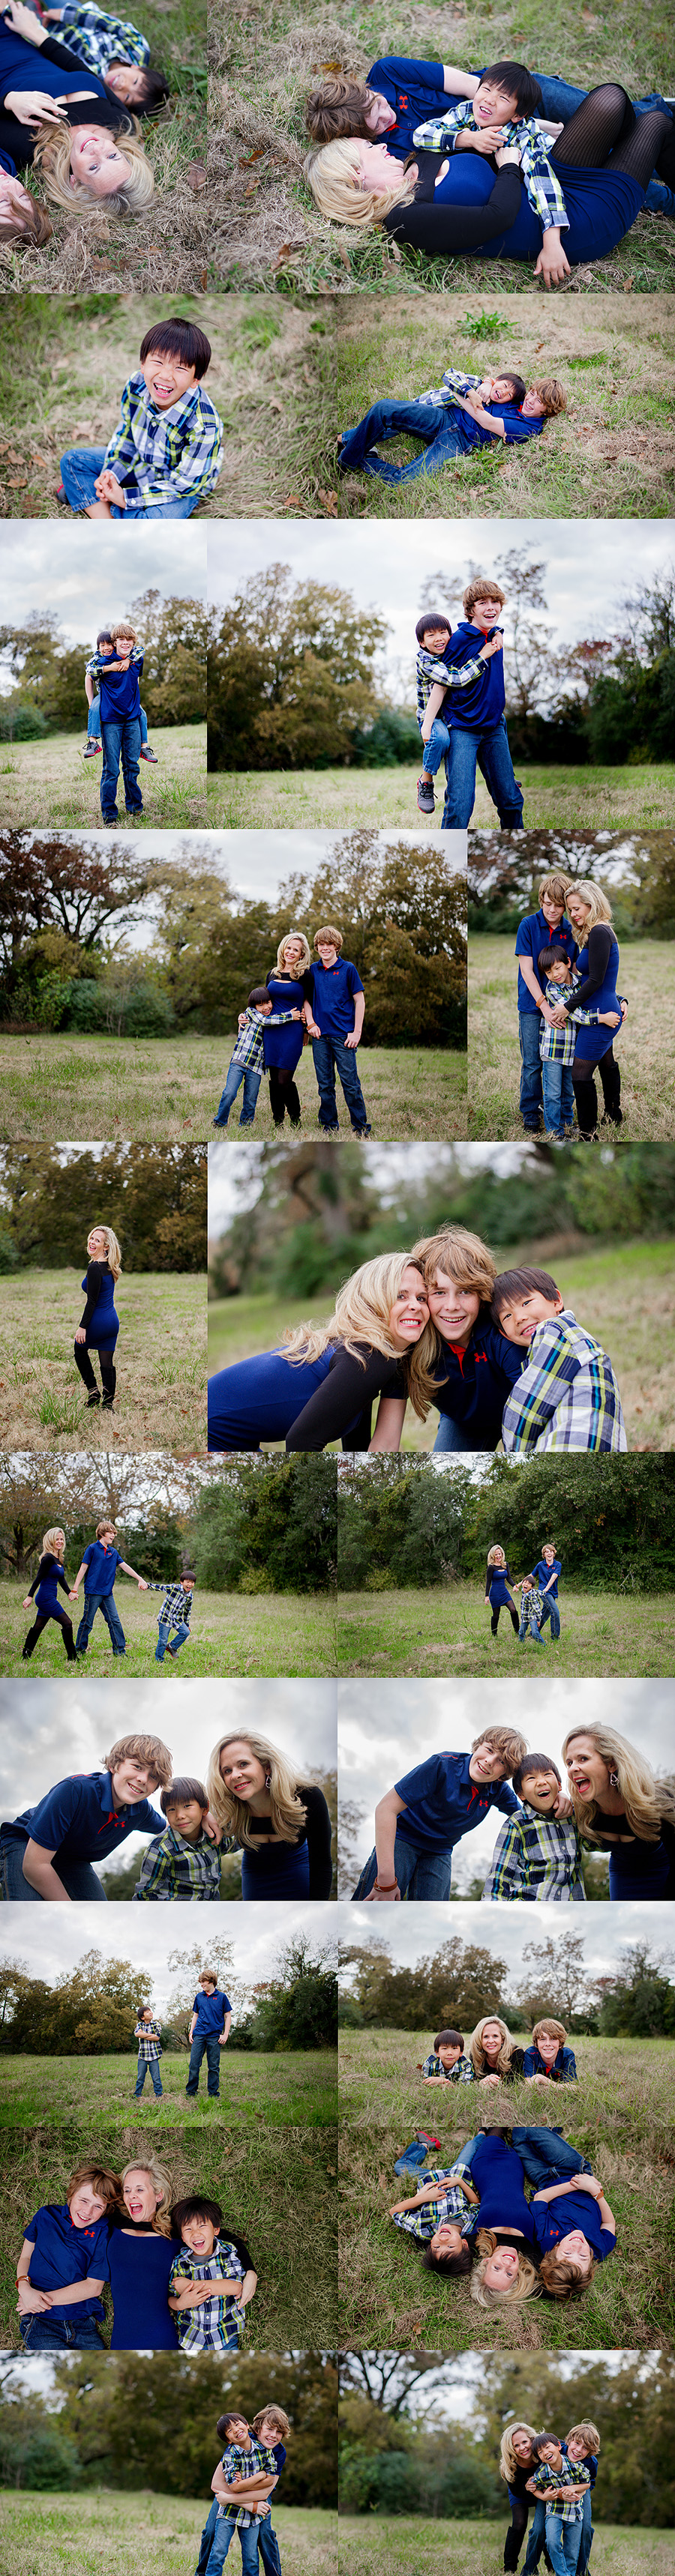 Houston Area Family Photos